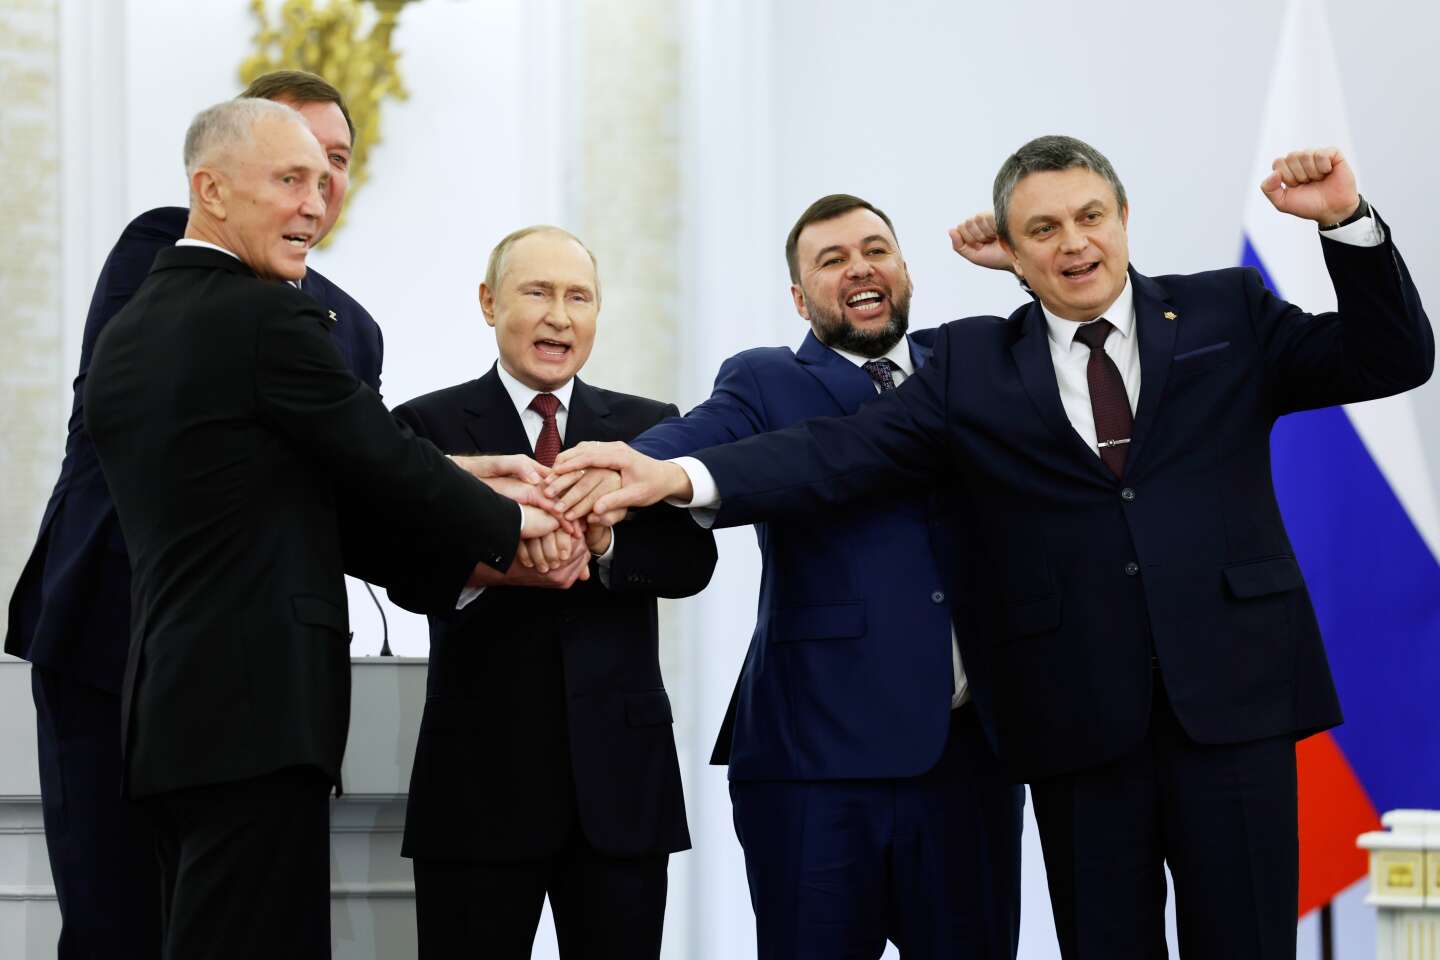 Vidéo. Vladimir Poutine annexe quatre régions ukrainiennes, l’UE le condamne « sans équivoque »